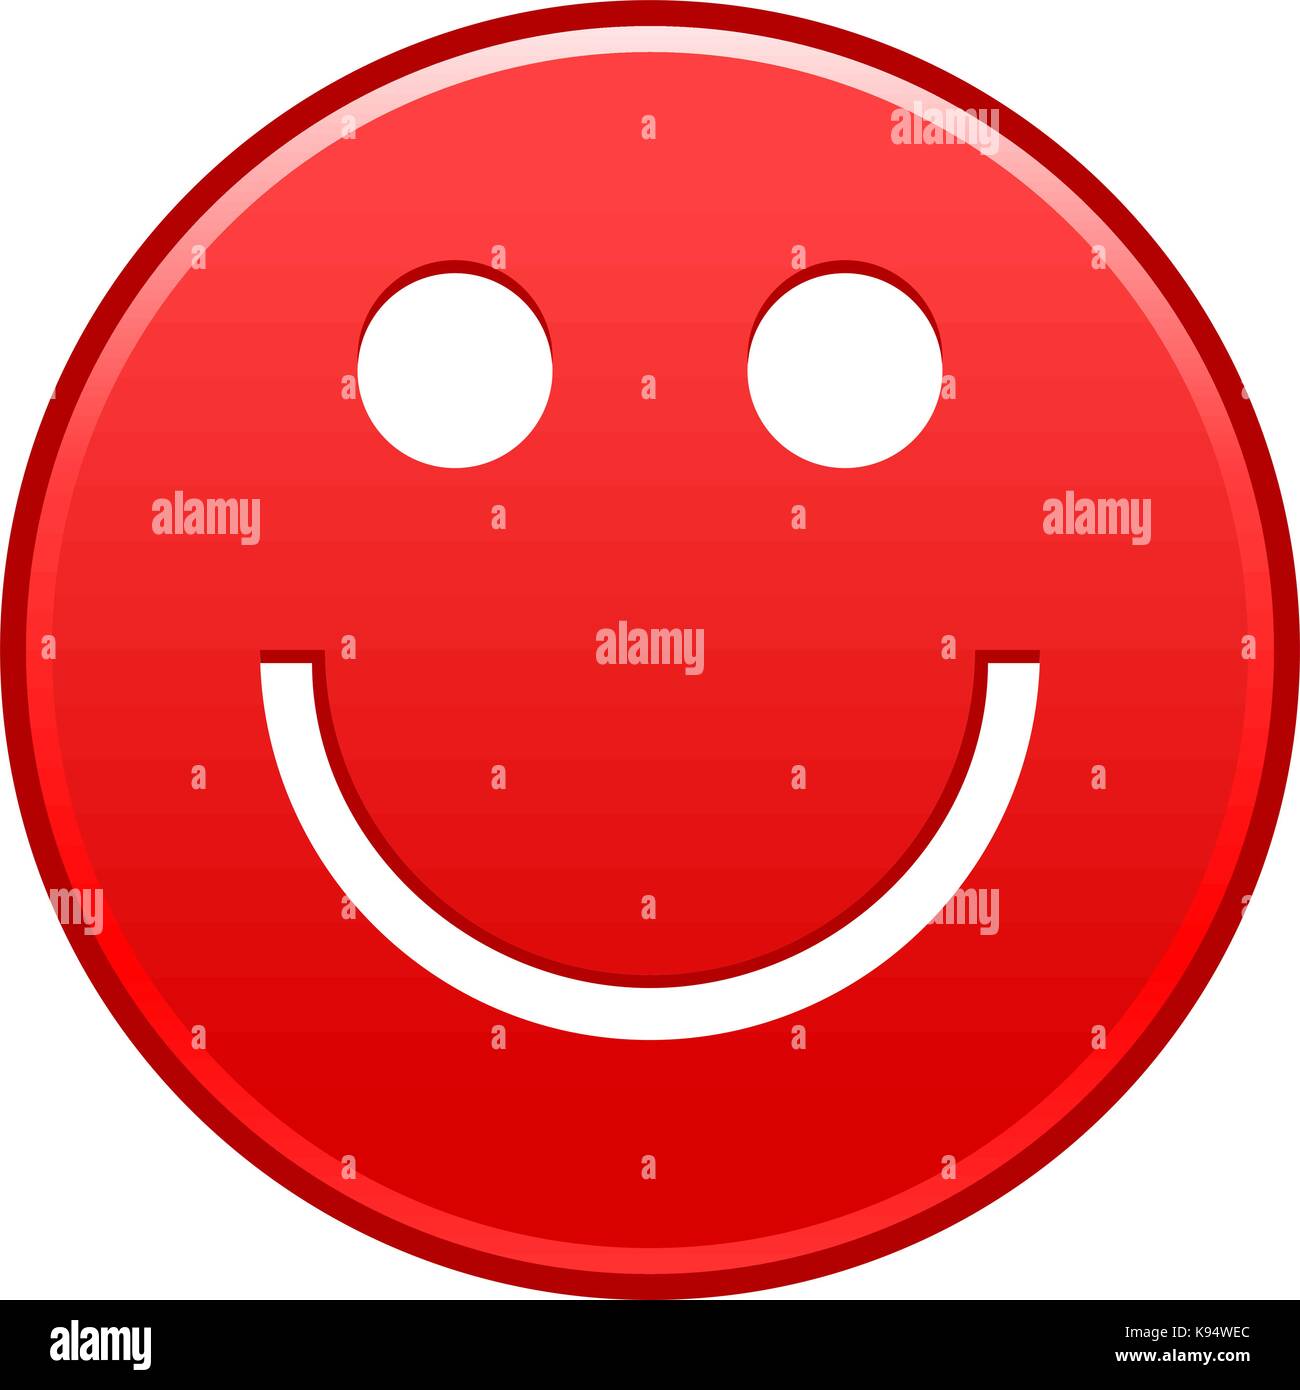 Visage Rouge Smiley Emoticon Joyeux Heureux Et Rapide Forme Recolorable Isole De L Arriere Plan Vector Illustration D Un Element Graphique Image Vectorielle Stock Alamy